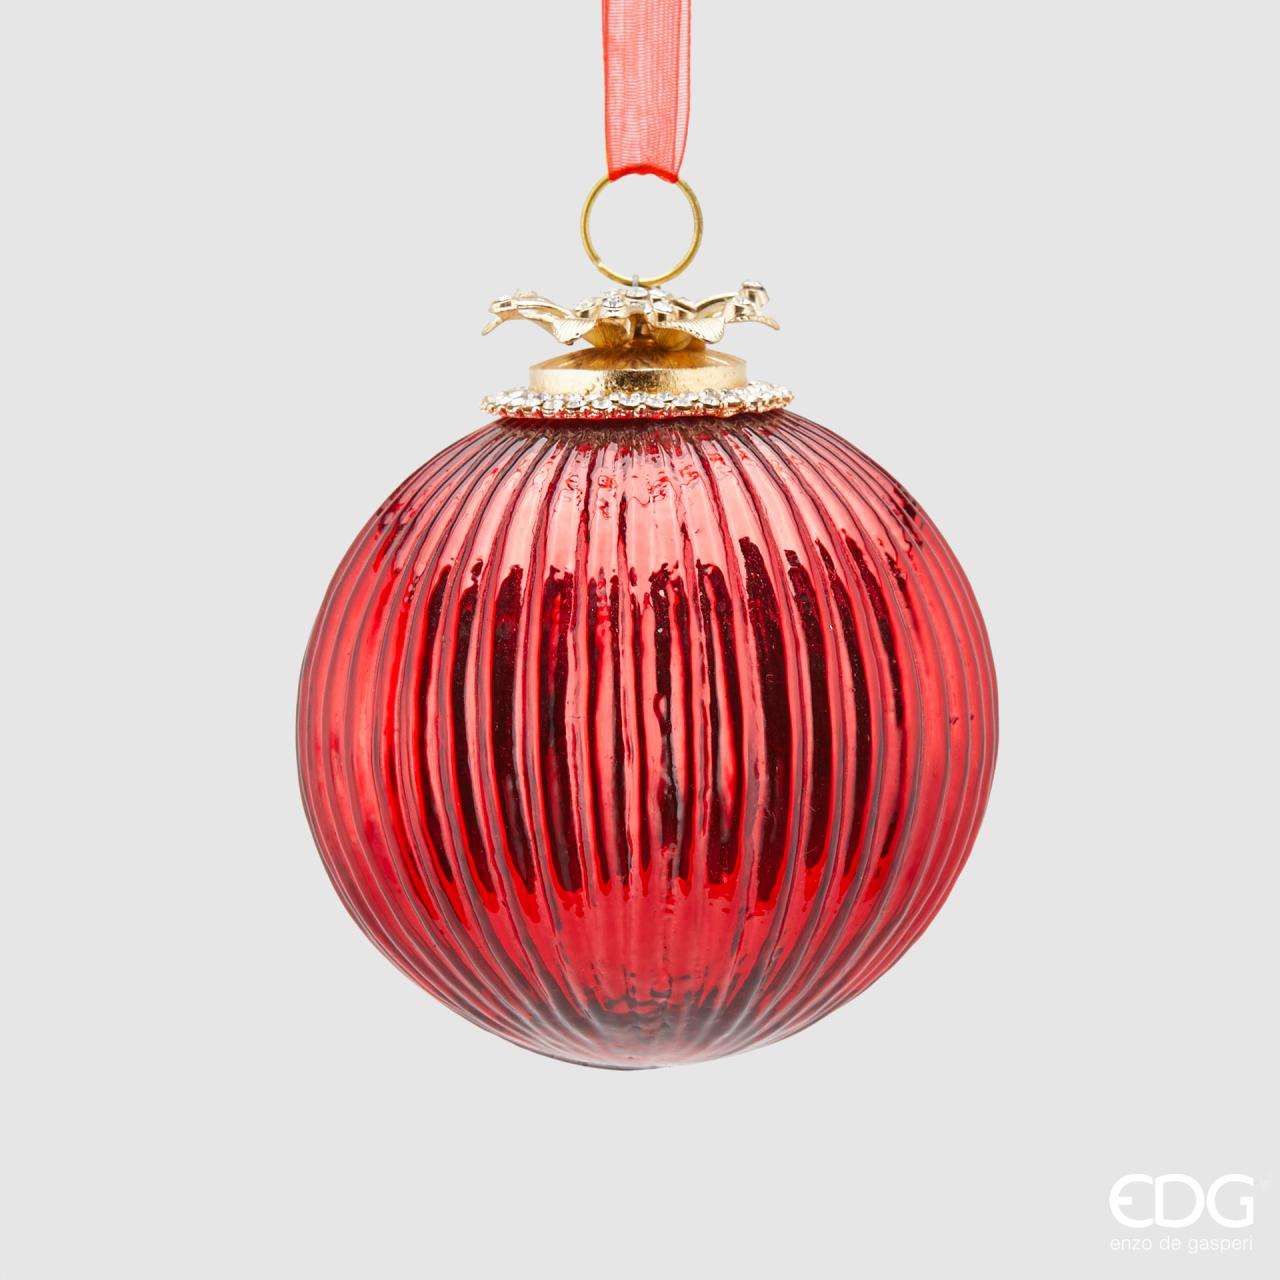 Decoro per albero di Natale, palla in vetro di colore rosso lavorato a righe  con applicazioni di metallo e strass. Dimensioni: Ø 10 cm. In negozio e online su tuttochic.it